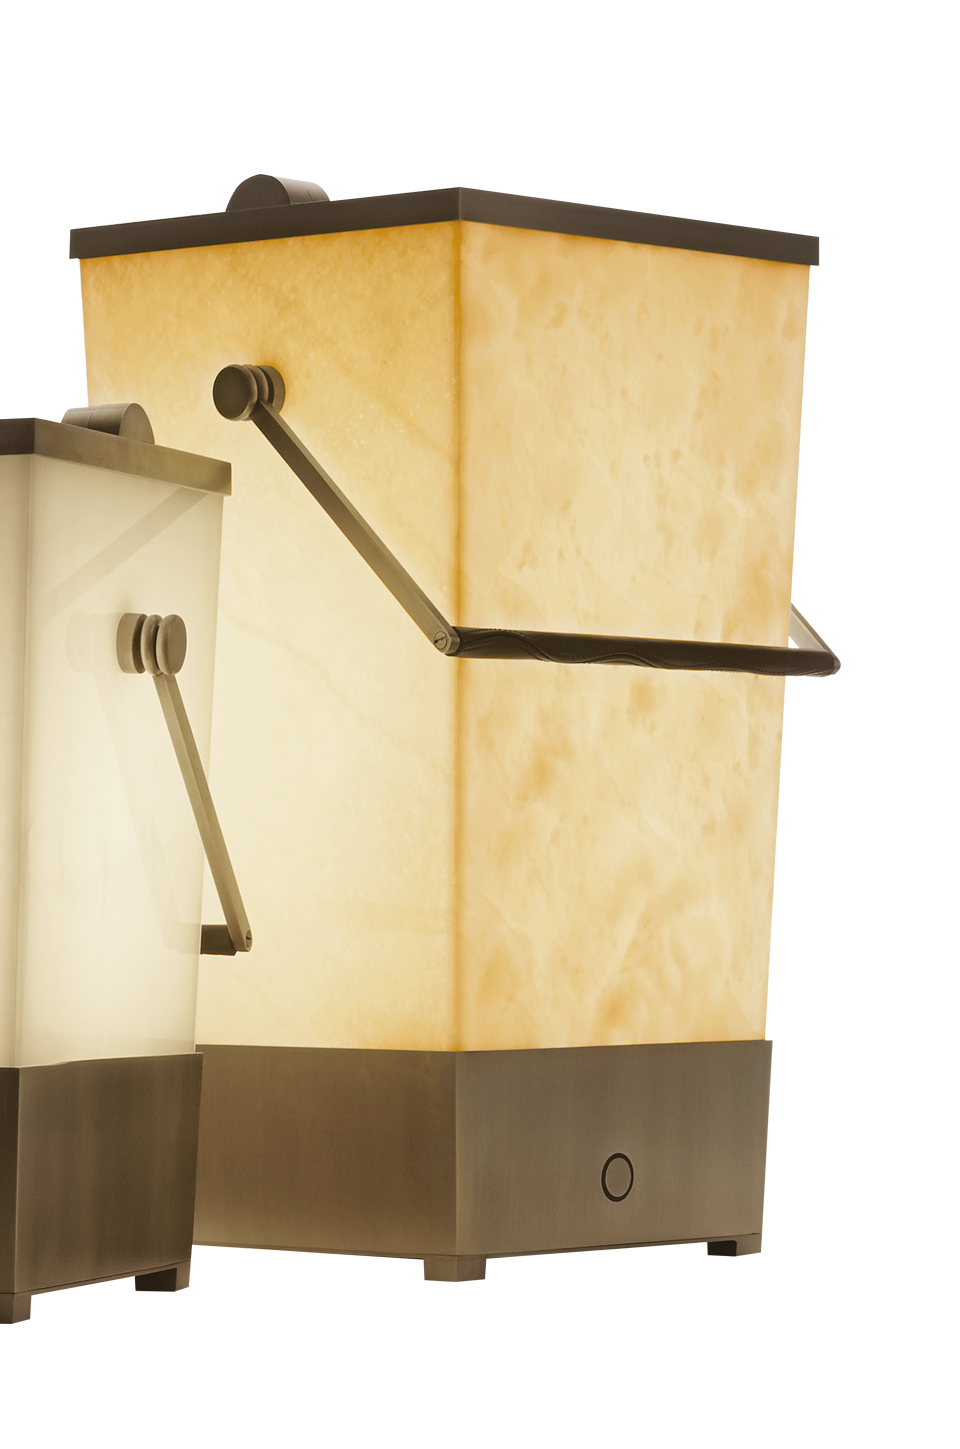 Hara est une lampe de sol LED, sans fil, en forme de seau avec une poignée en bronze, revêtue de cuir. Ce luminaire figure dans le catalogue Promemoria | Promemoria